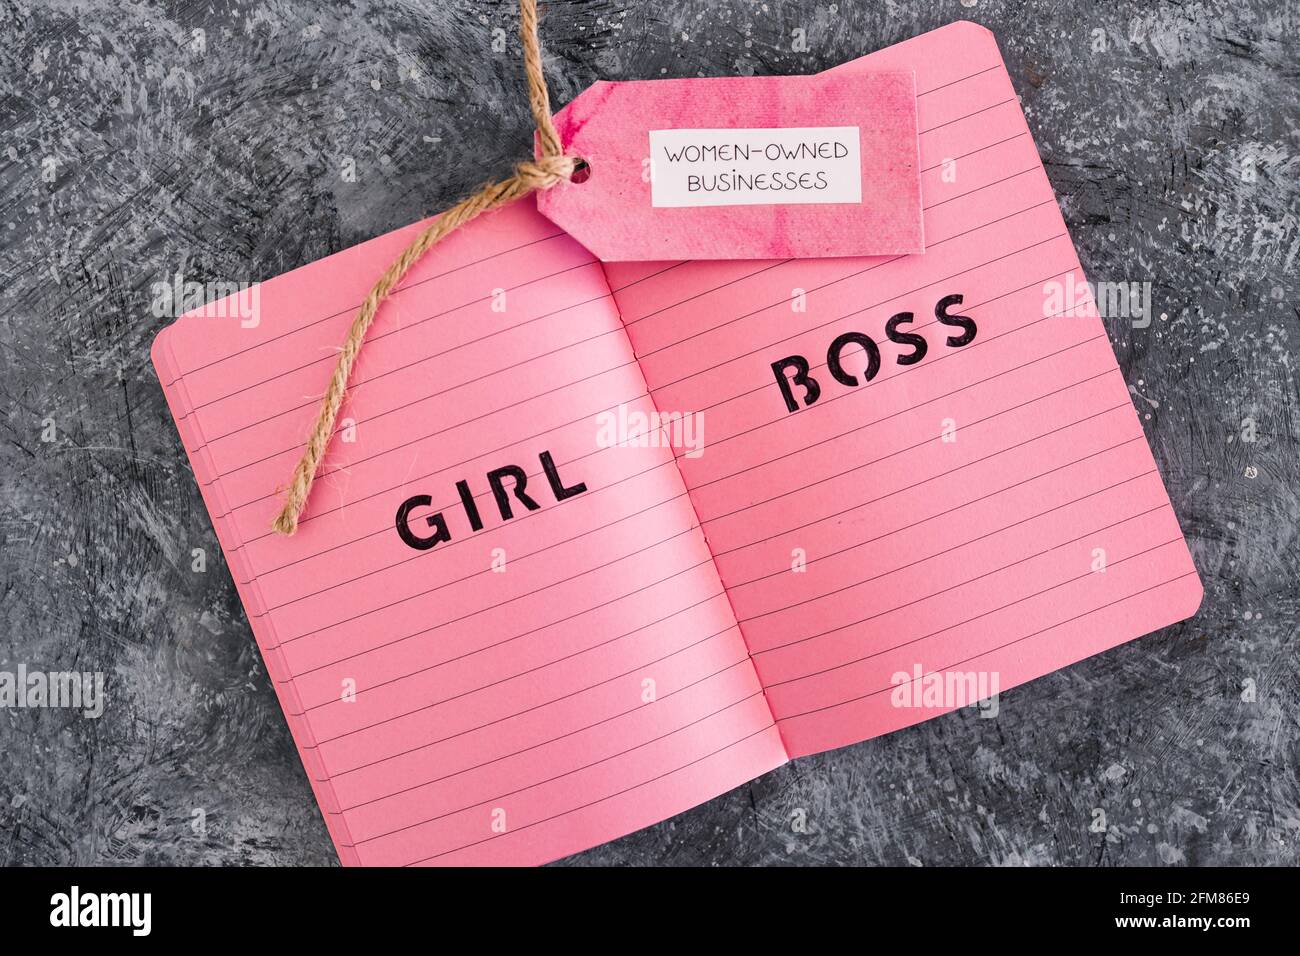 étiquette d'affaires appartenant à des femmes avec le texte de patron de fille sur le bloc-notes rose, soutenant l'égalité et l'égalité des chances Banque D'Images